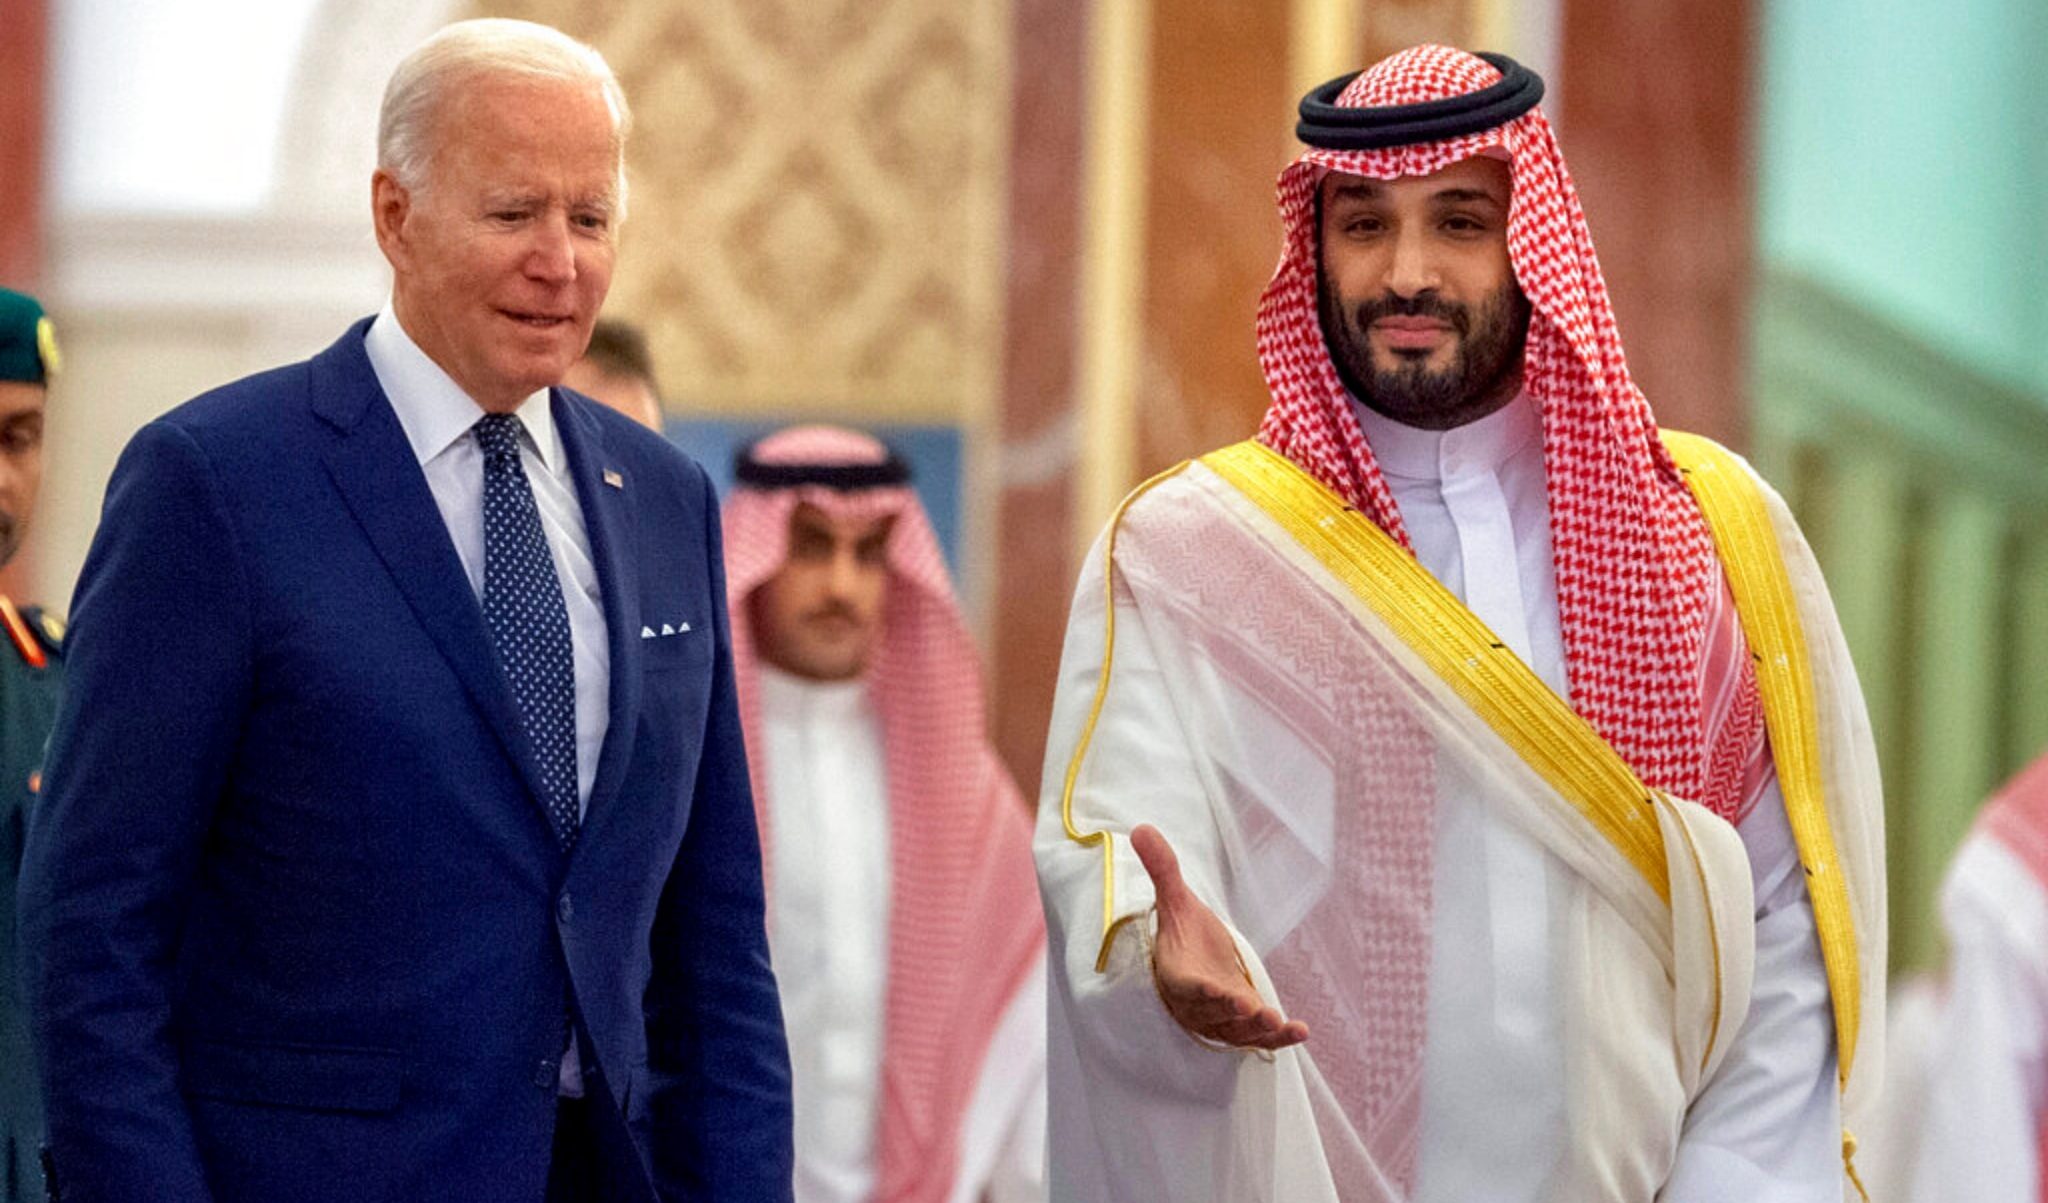 L'Arabia Saudita insiste: "Abbiamo mediato per lo scambio di prigionieri tra Stati Uniti e Russia"